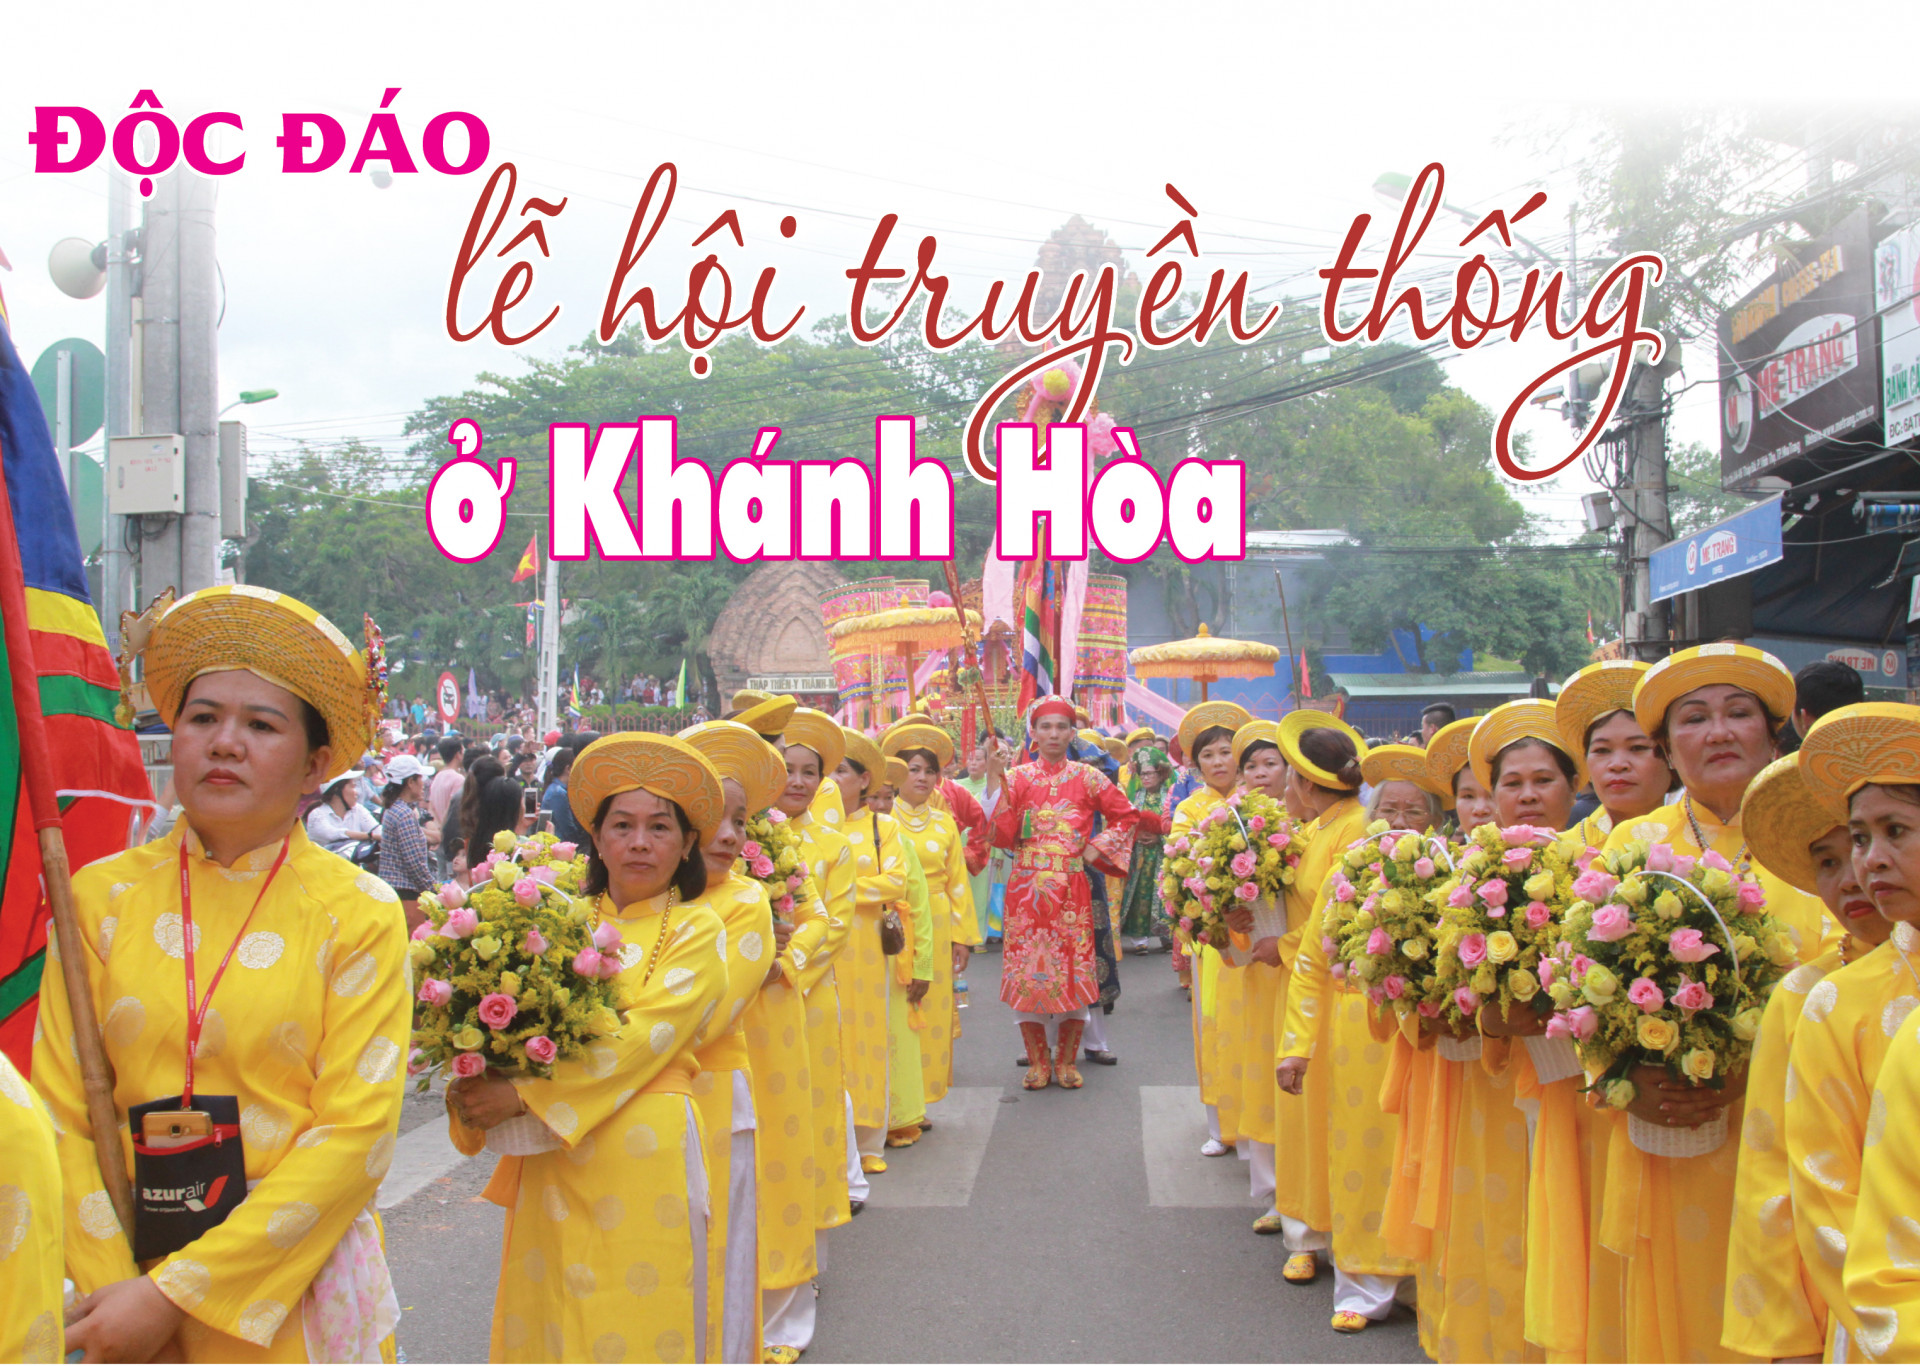 Độc đáo lễ hội truyền thống ở Khánh Hòa